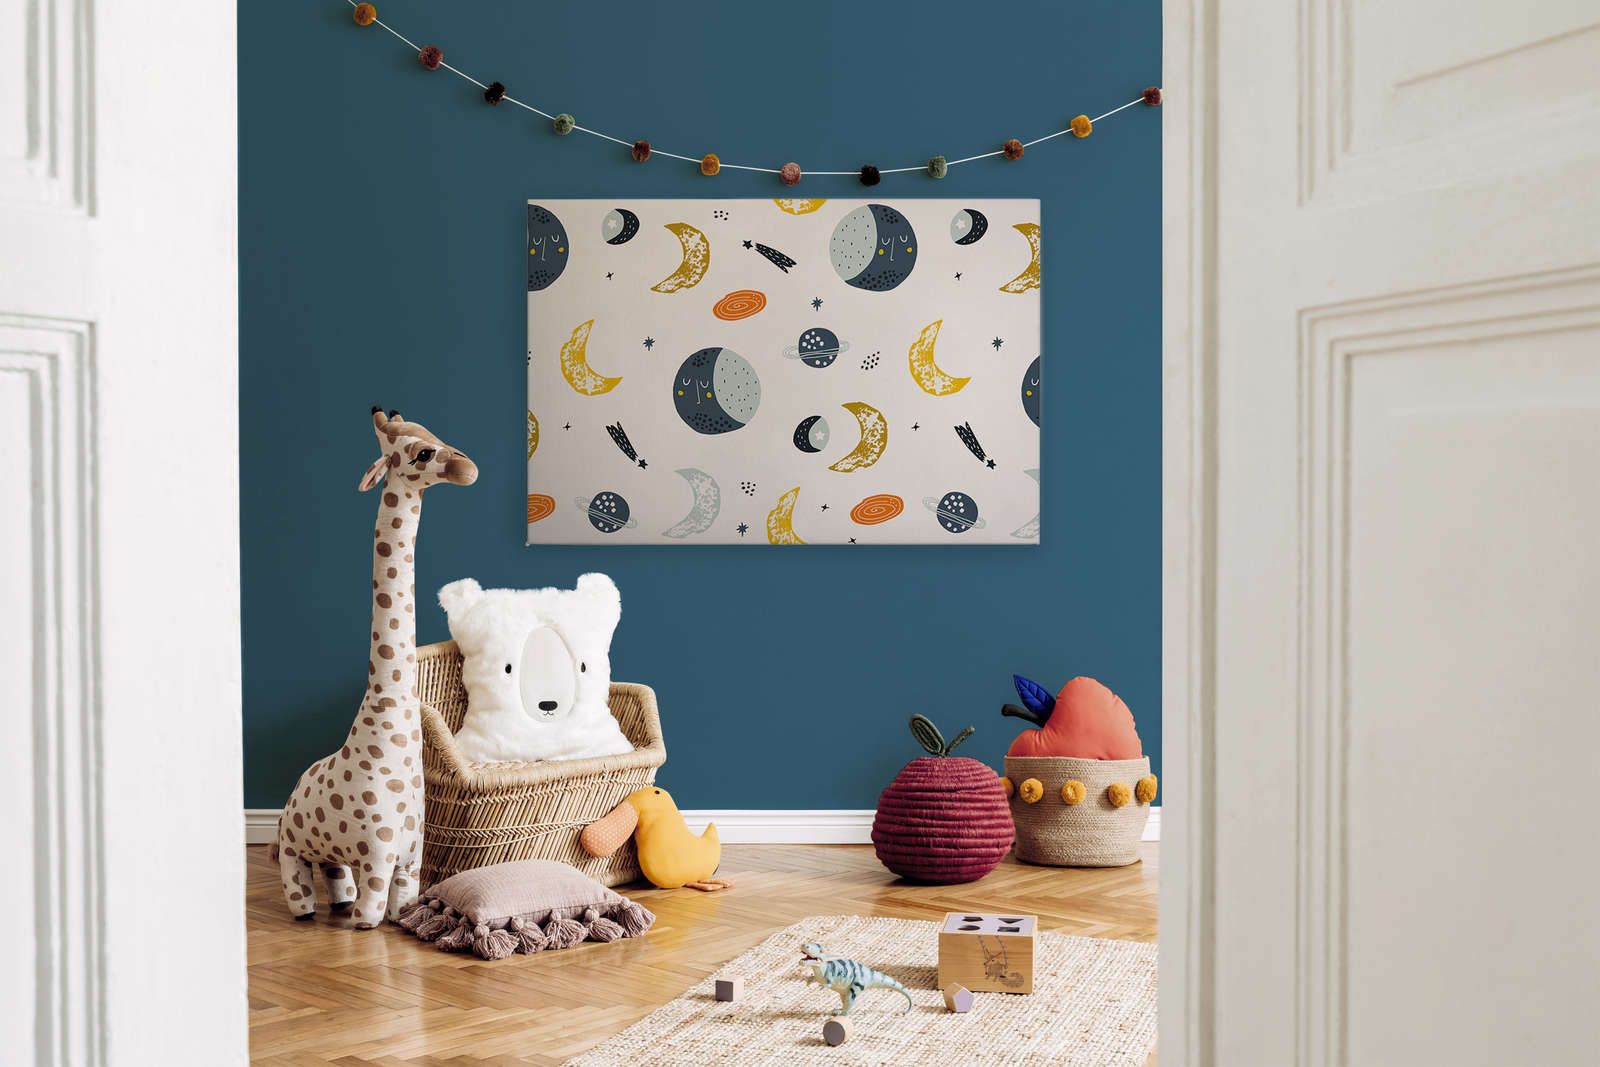             Leinwand mit Monden und Sternschnuppen – 120 cm x 80 cm
        